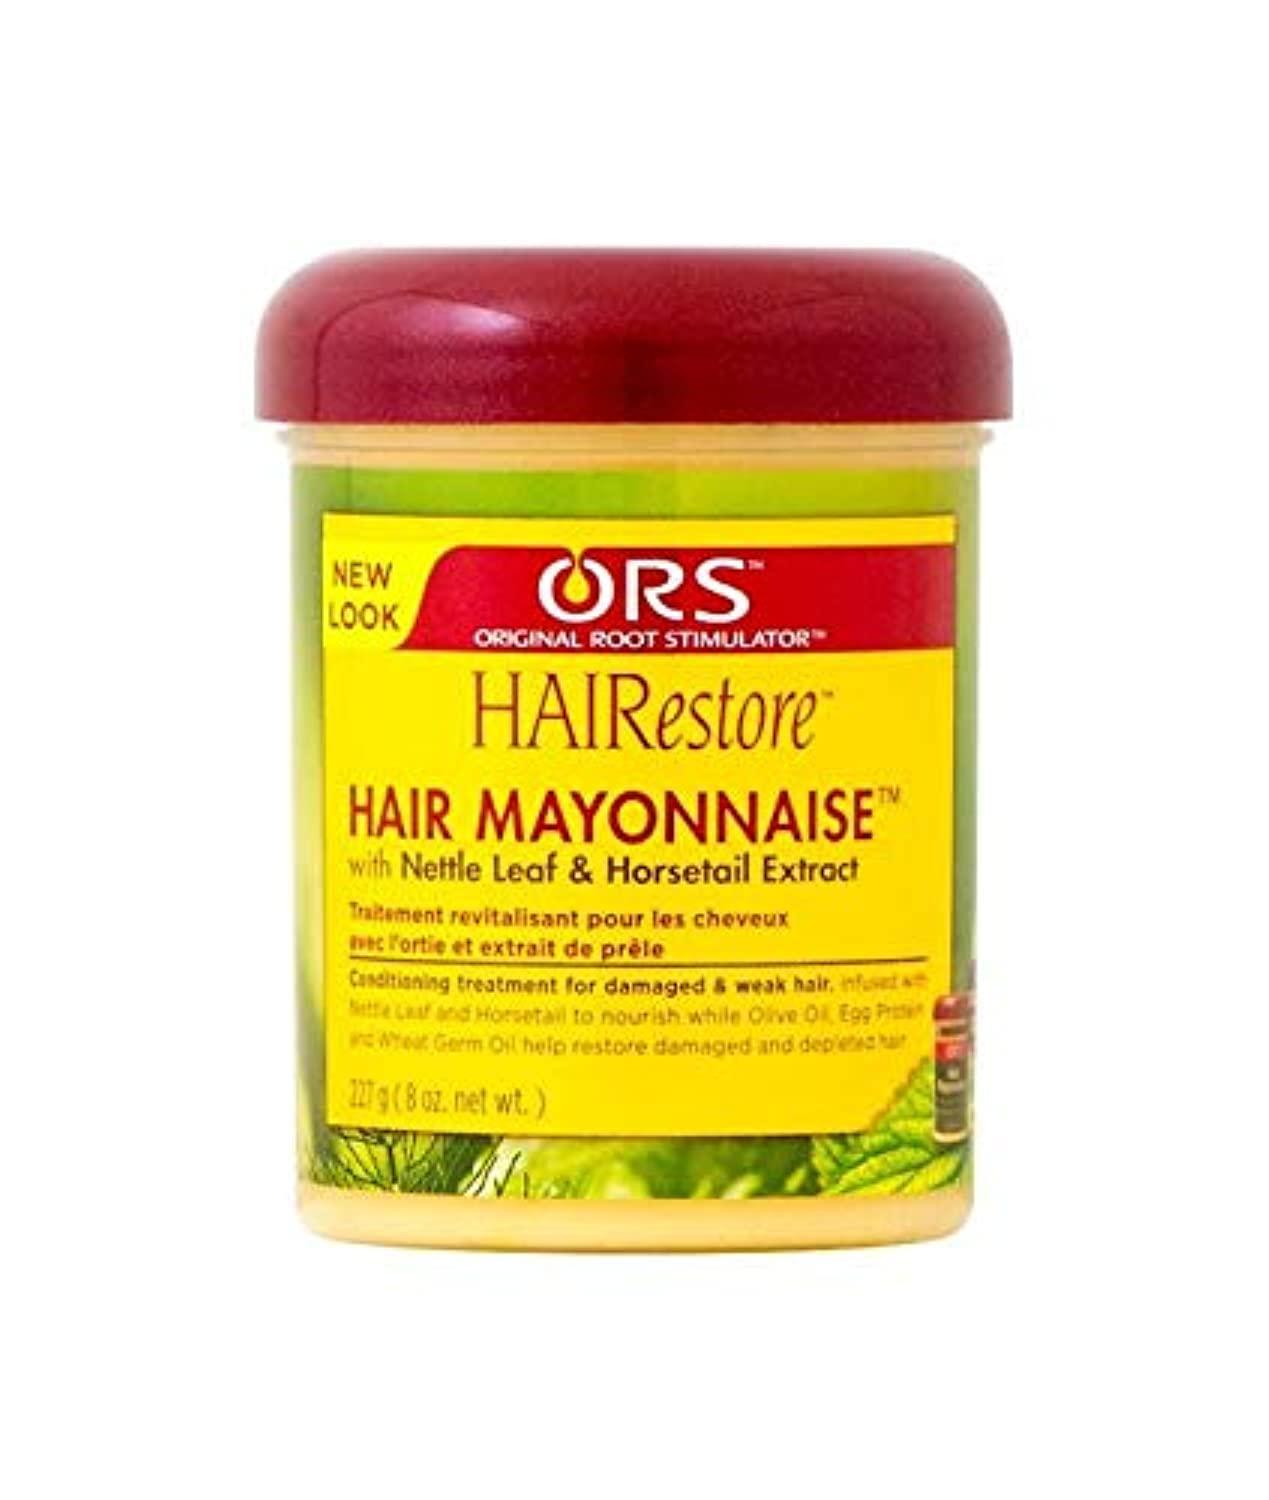 Africa's Best Hair Mayonnaise vs ORS Hair Mayonnaise 